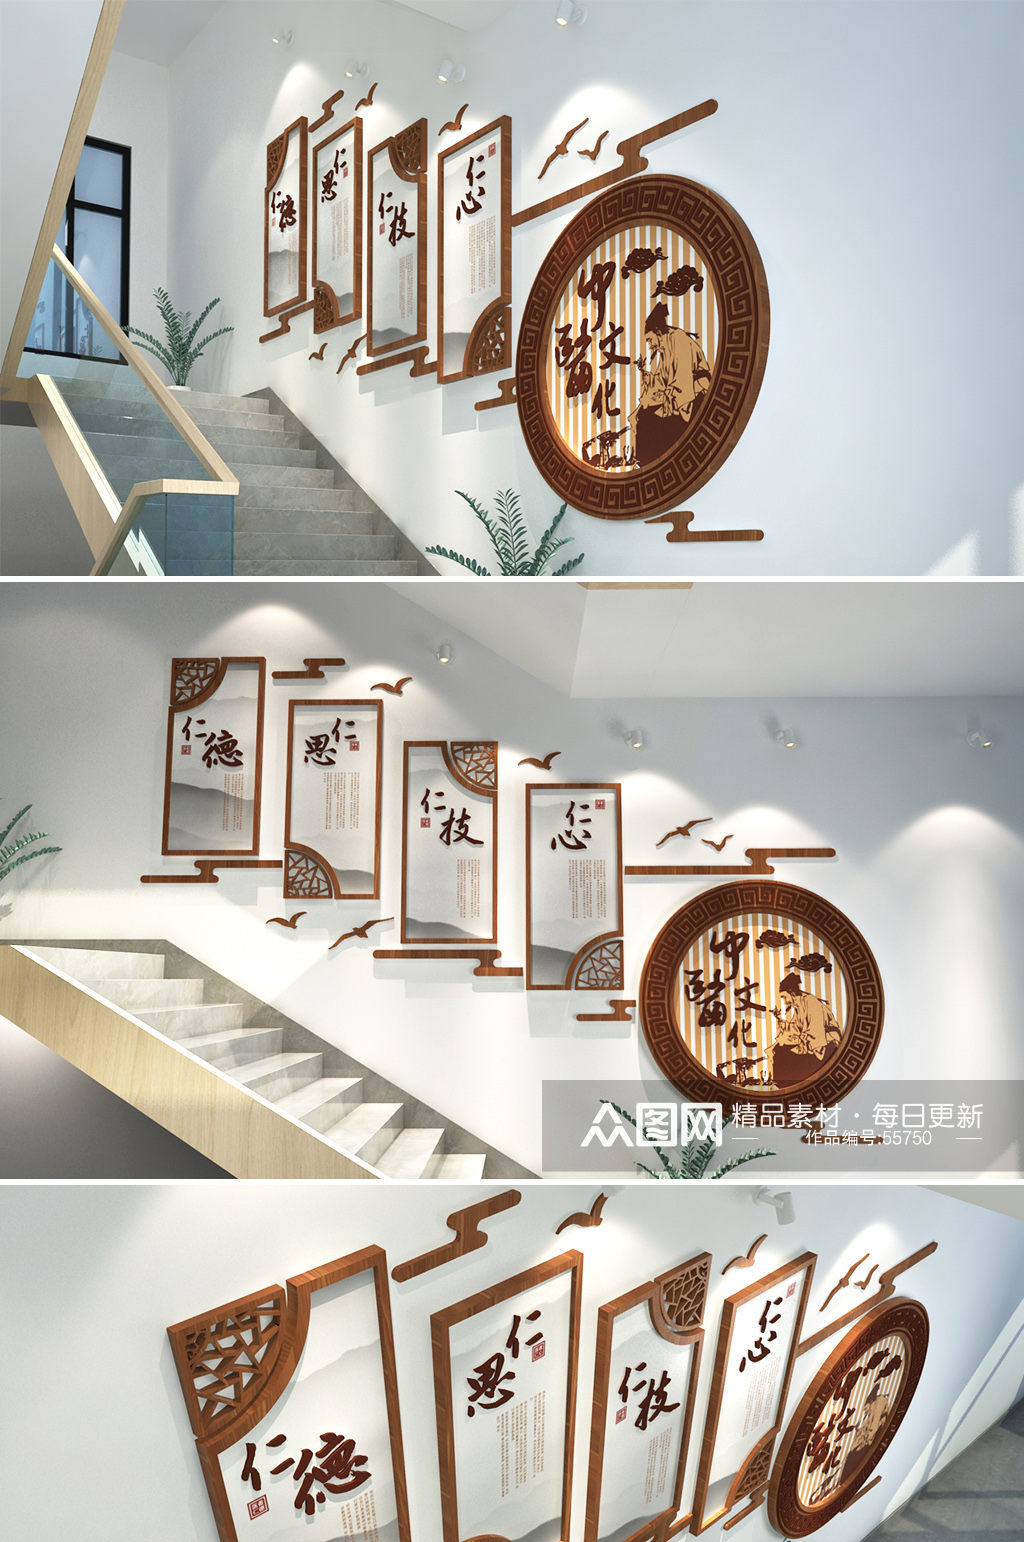 中华文化医院诊所 楼梯医疗文化墙设计布置效果图素材